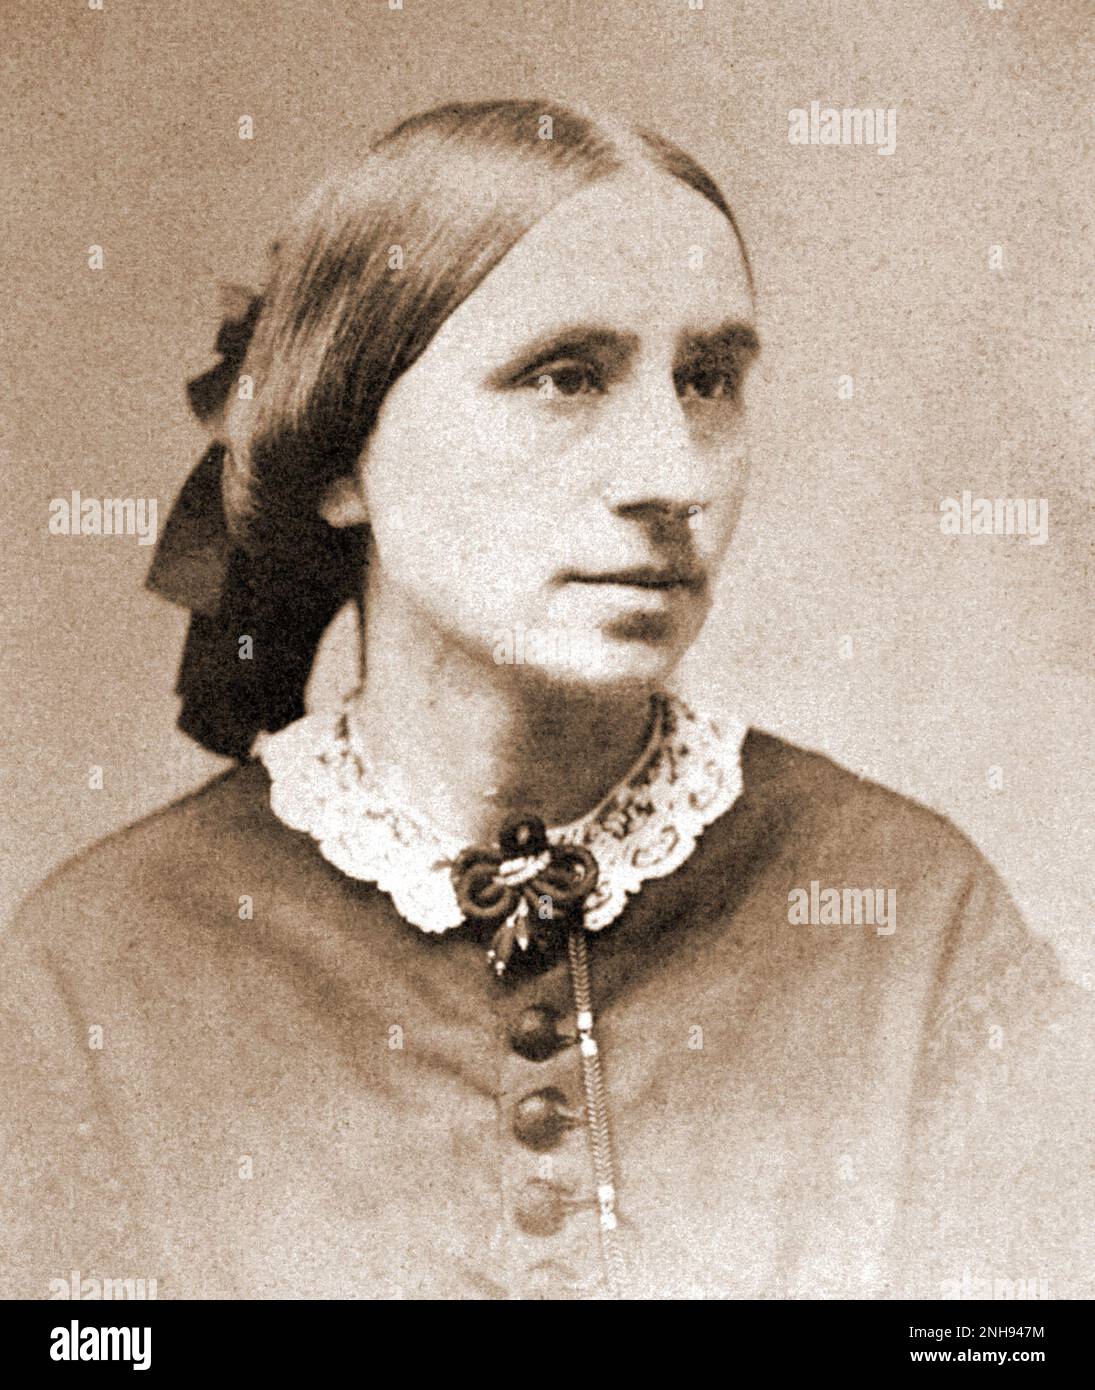 Marie Elisabeth Zakrzewska (1829-1902), medico polacca-americano che si chiamò medico pionieristico negli Stati Uniti e fondò il New England Hospital for Women and Children. Foto ca. 1845-1855./n/n Foto Stock